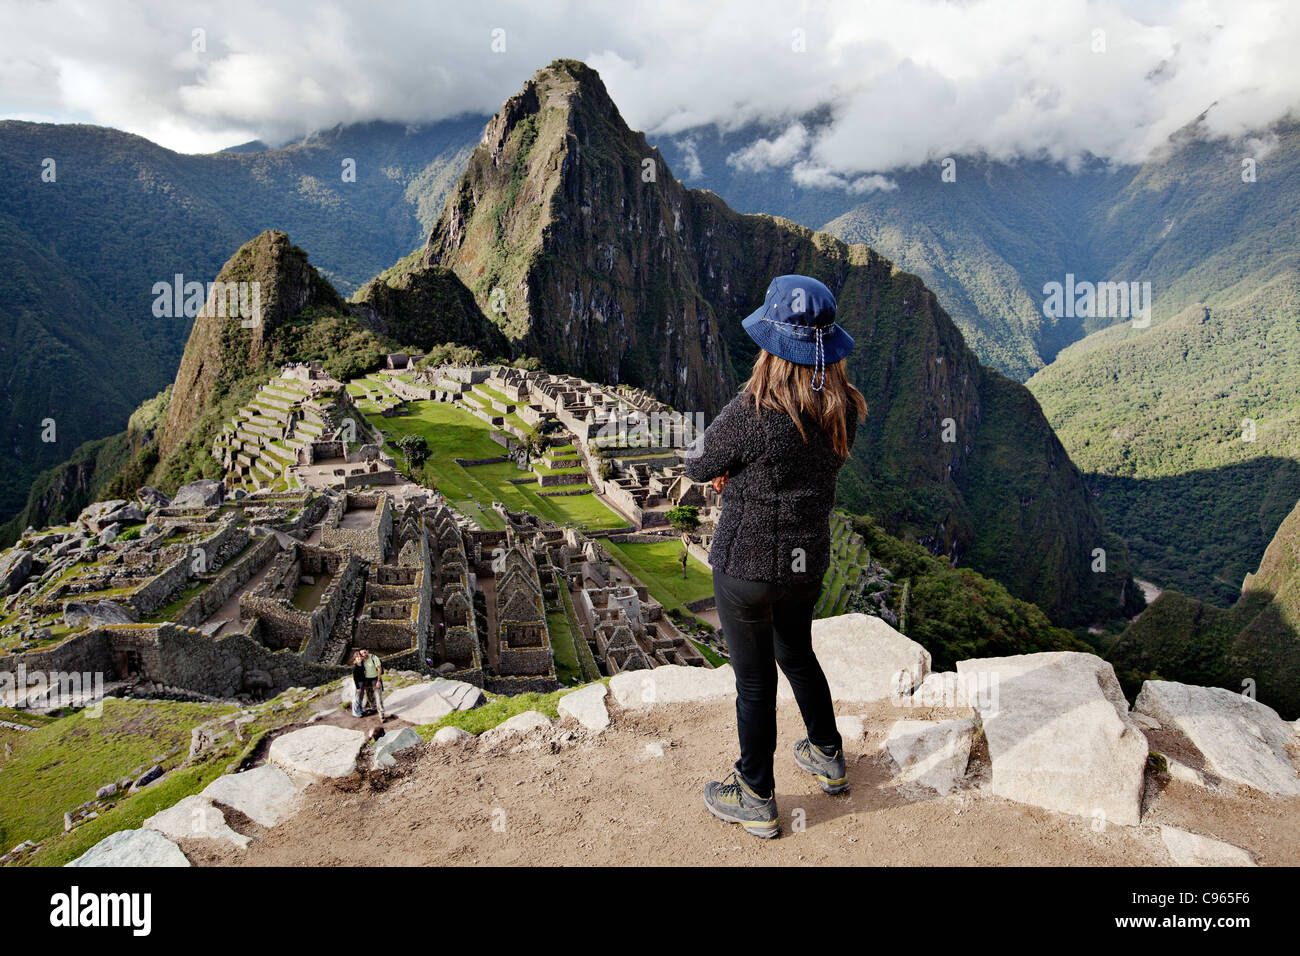 L'observation touristique Machu Picchu, les ruines Inca et la plus connue dans le site touristique des Andes, au Pérou. Banque D'Images